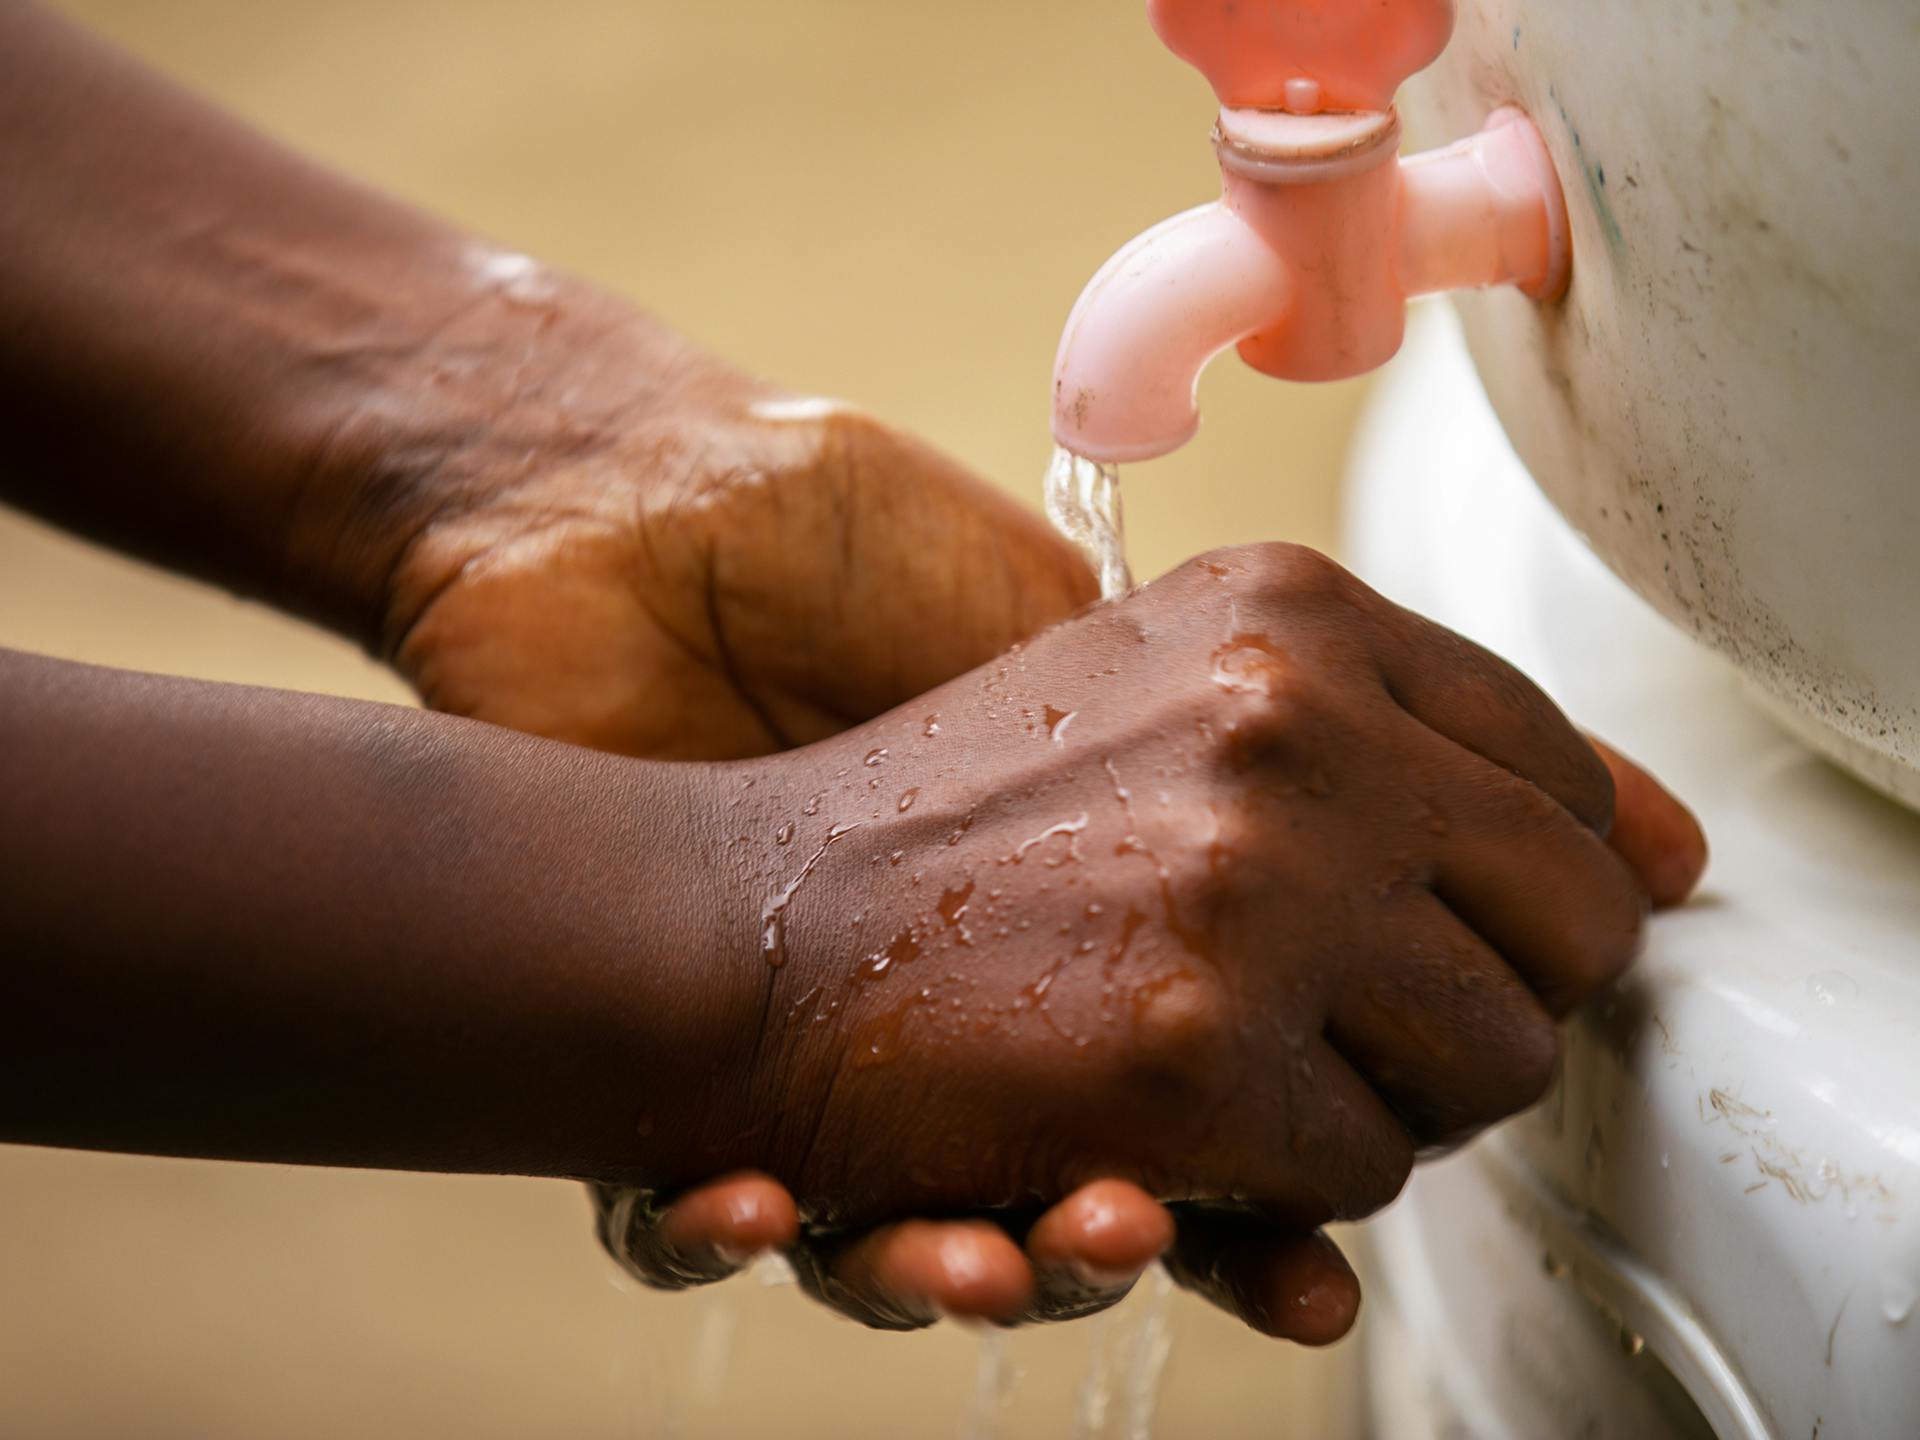 Närbild på två händer som tvättar sig med vatten från en plastkran.